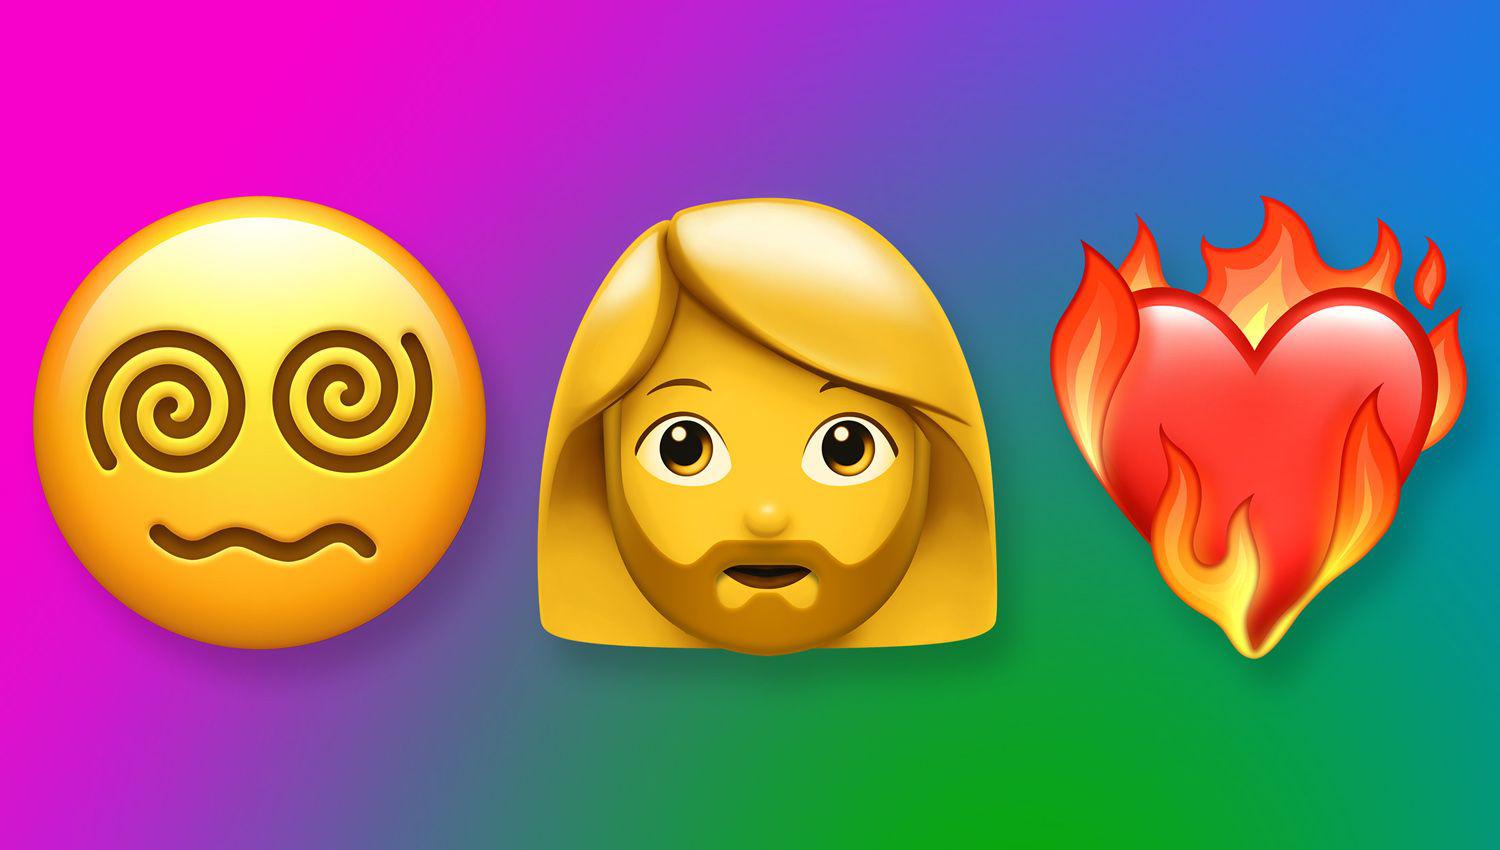 Diacutea del emoji 2021- cuaacutendo es queacute se festeja y queacute va a cambiar